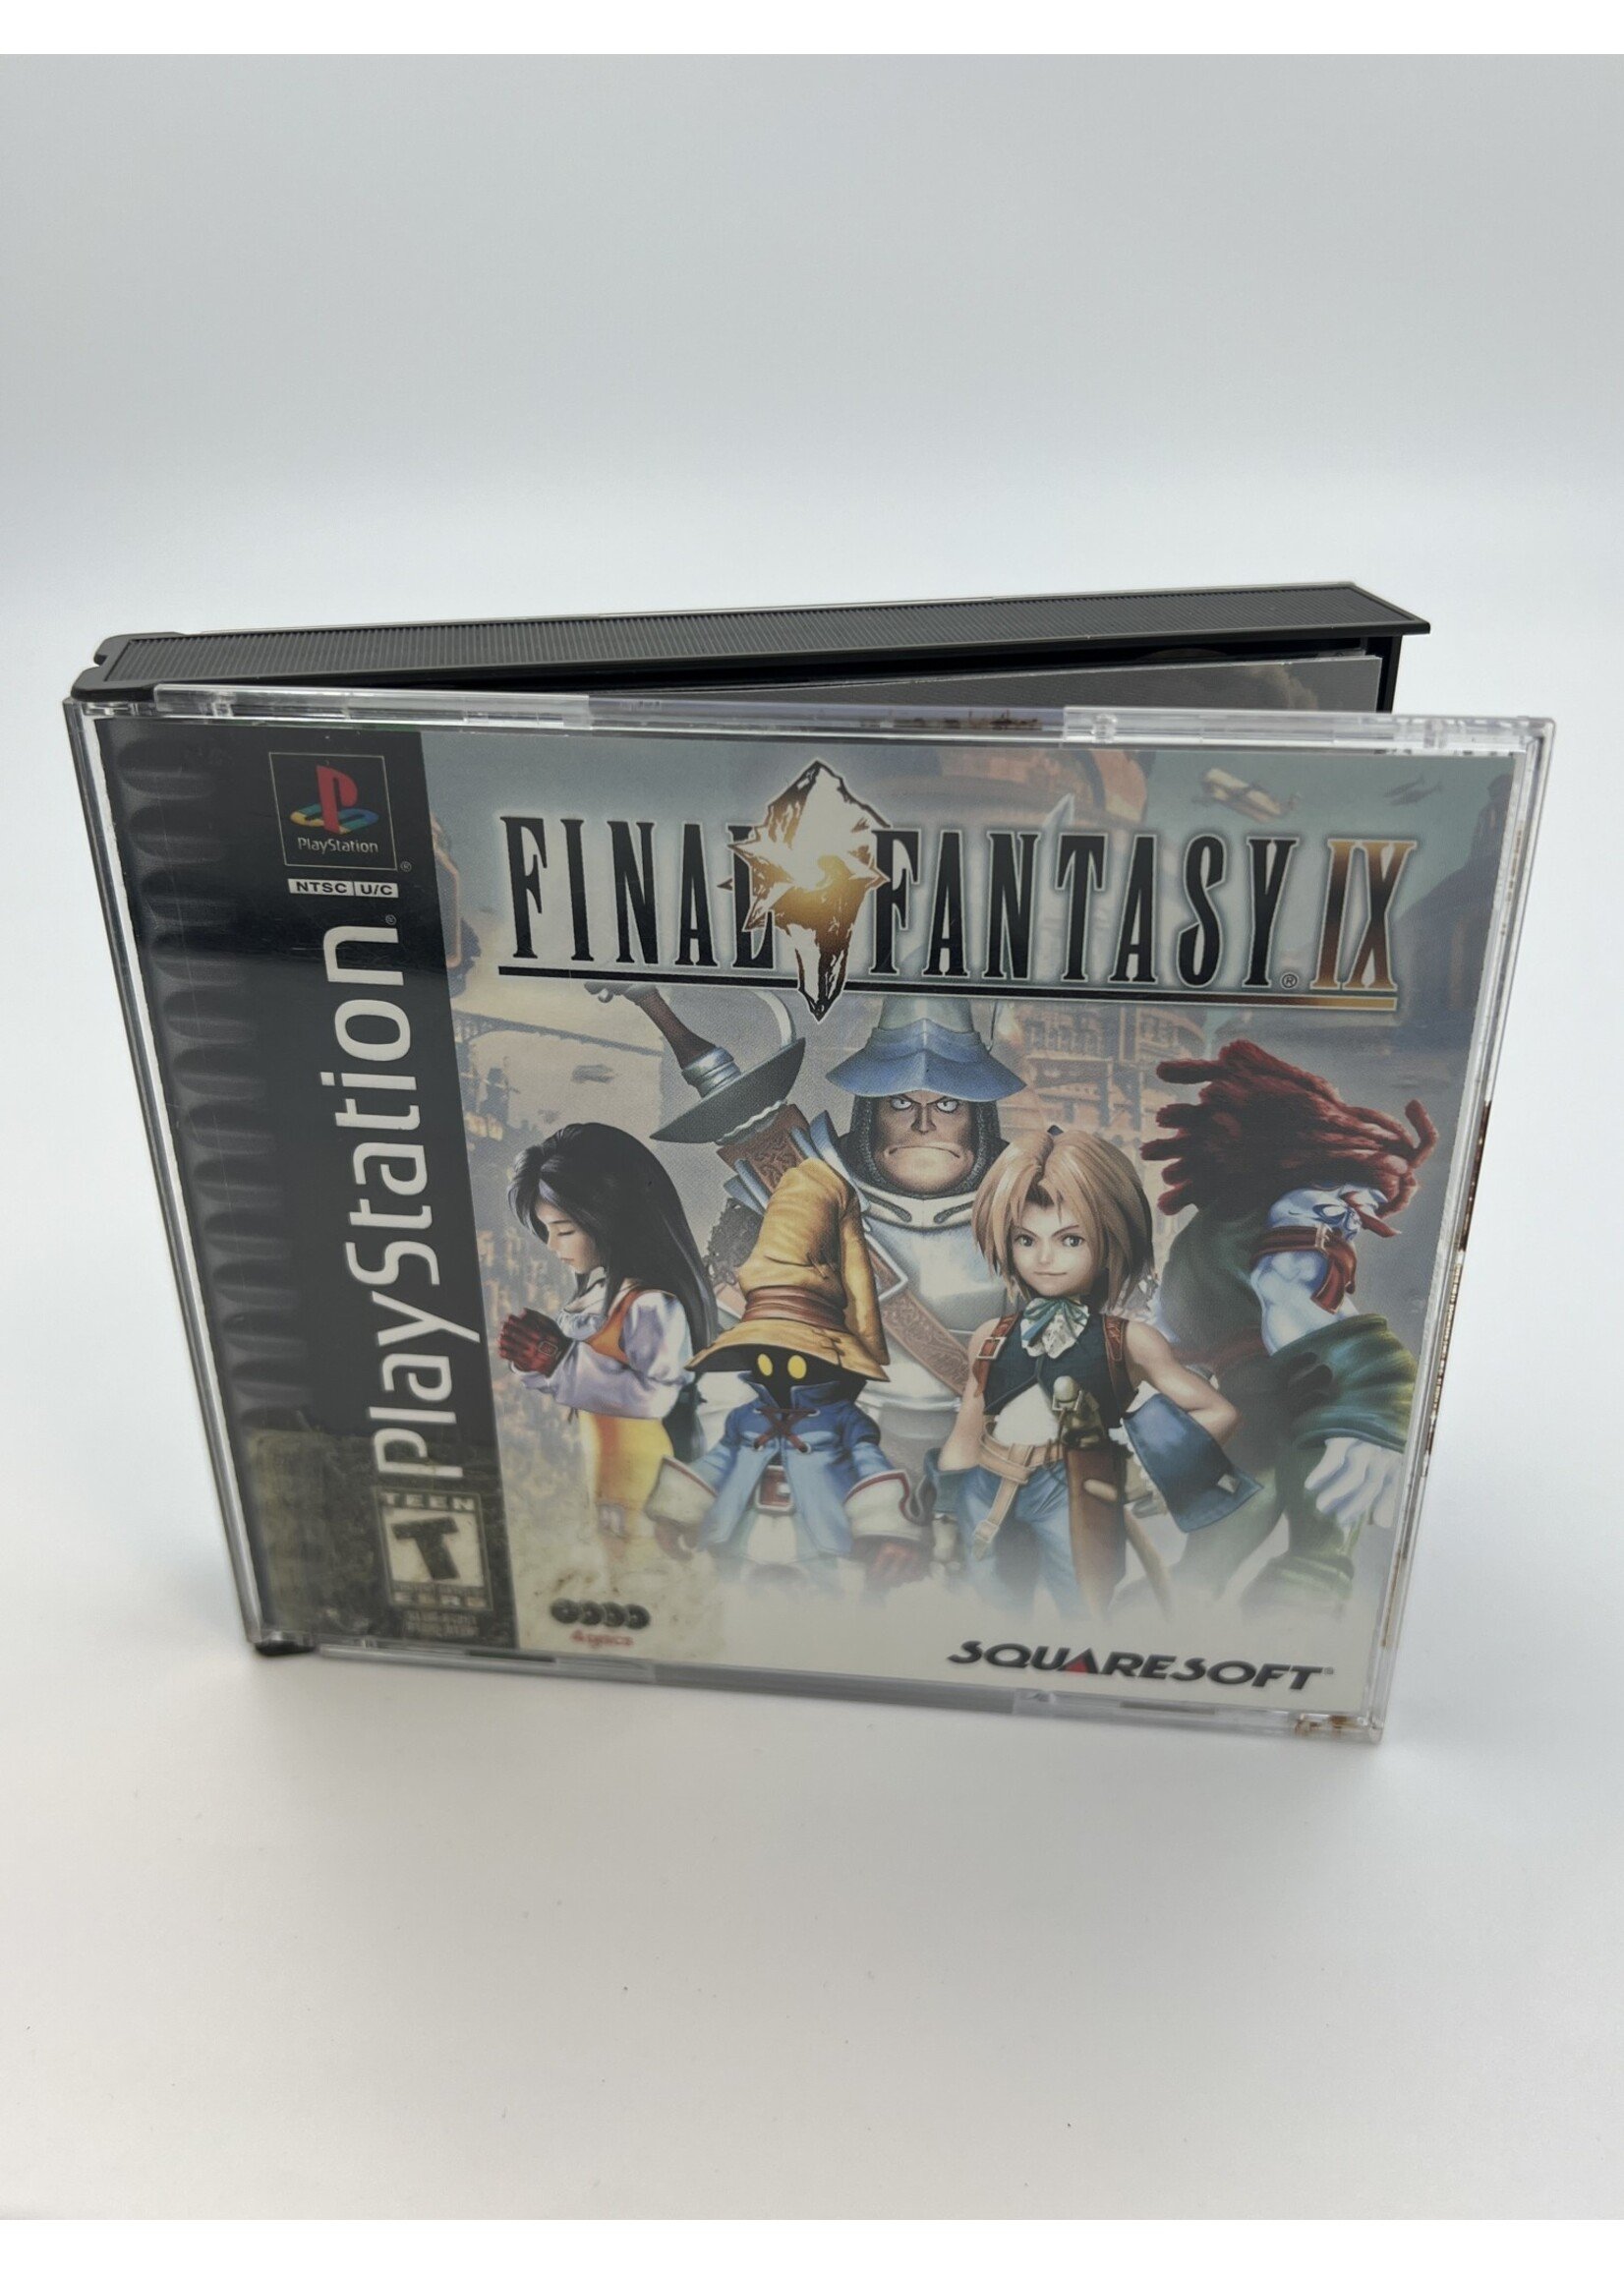 Sony   Final Fantasy 9 PS